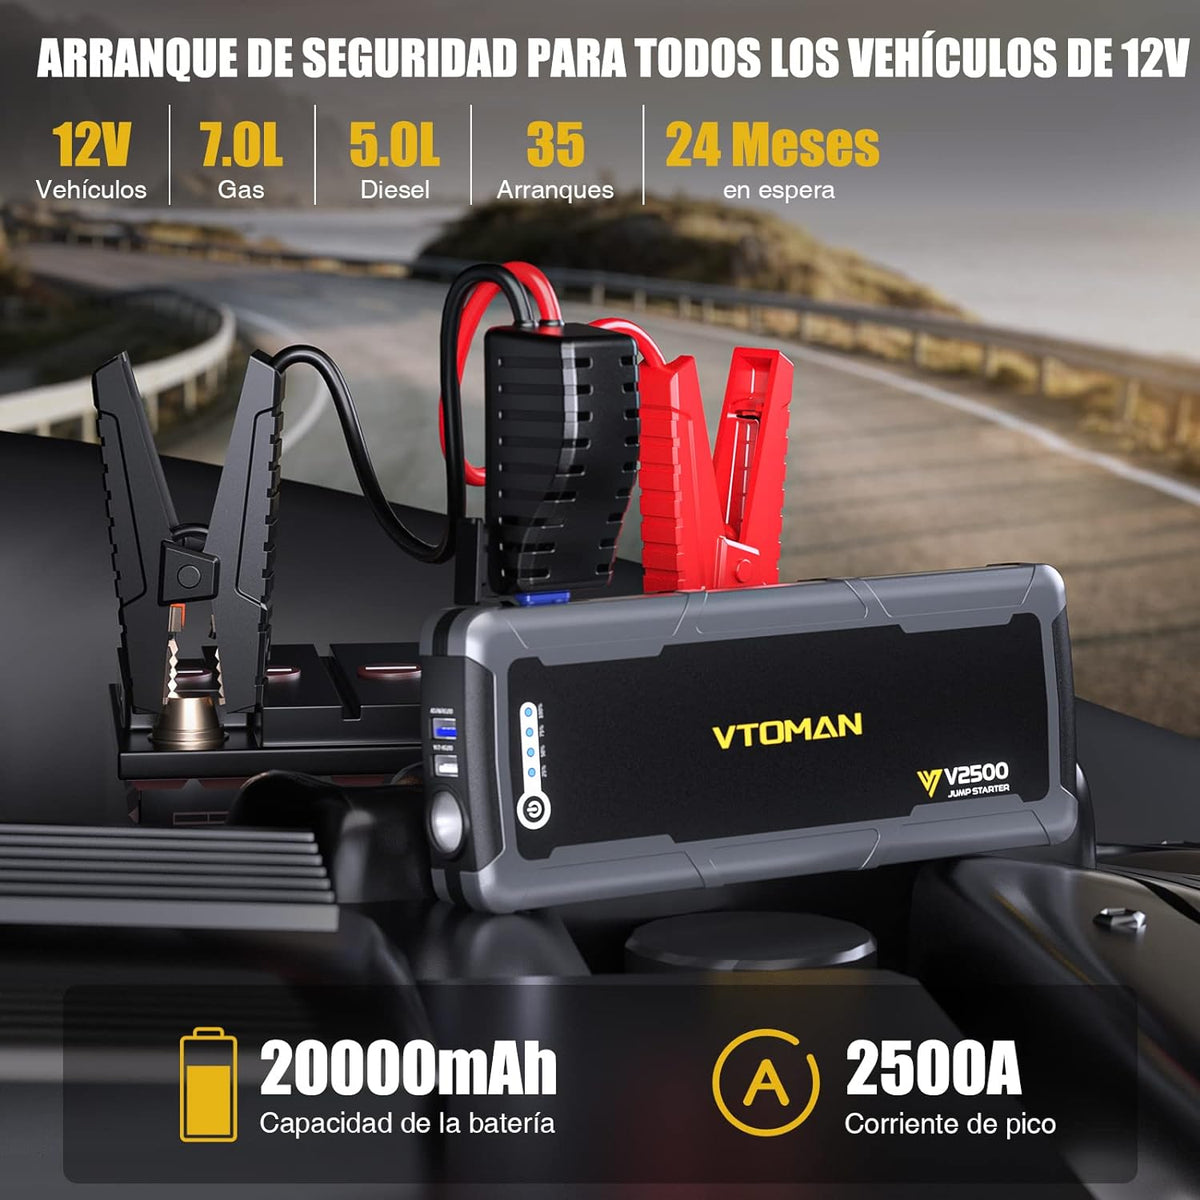 VTOMAN Arrancador de Baterias para autos de 7.0L Gas y 5.0L Diesel